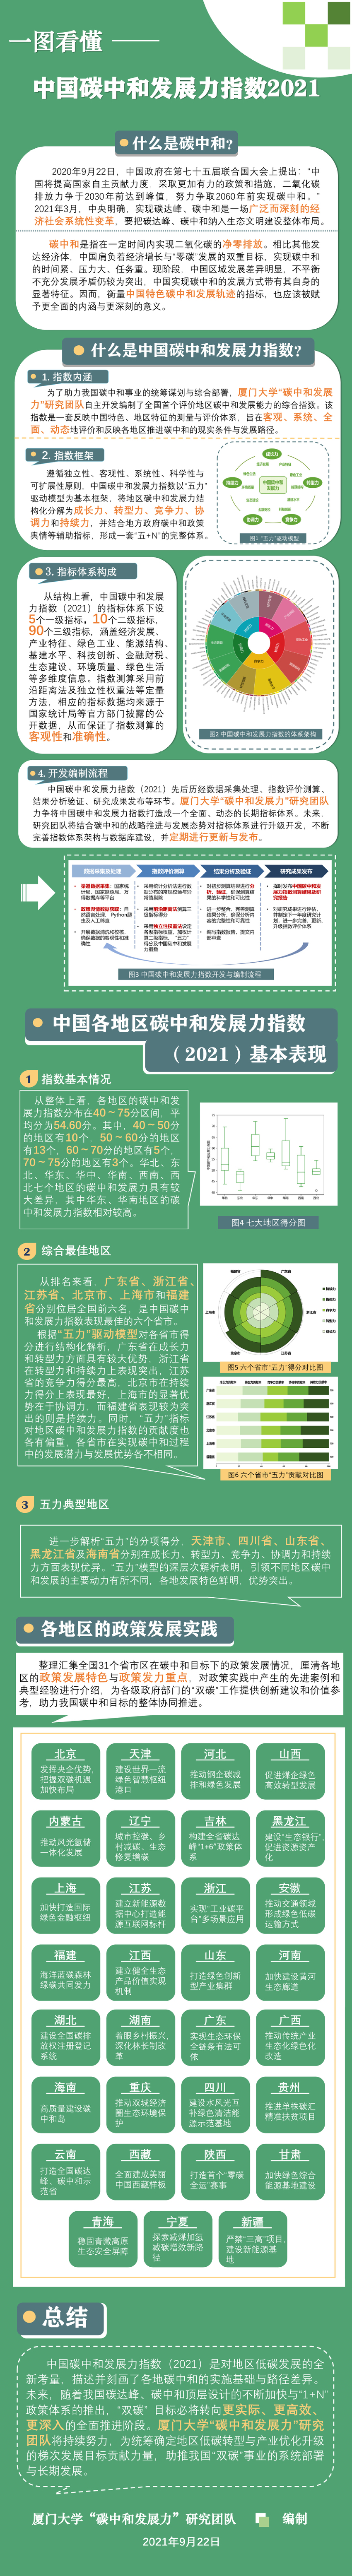 中國首個碳中和發展力指數發佈_fororder_614ae8bea3107be47f25f96e